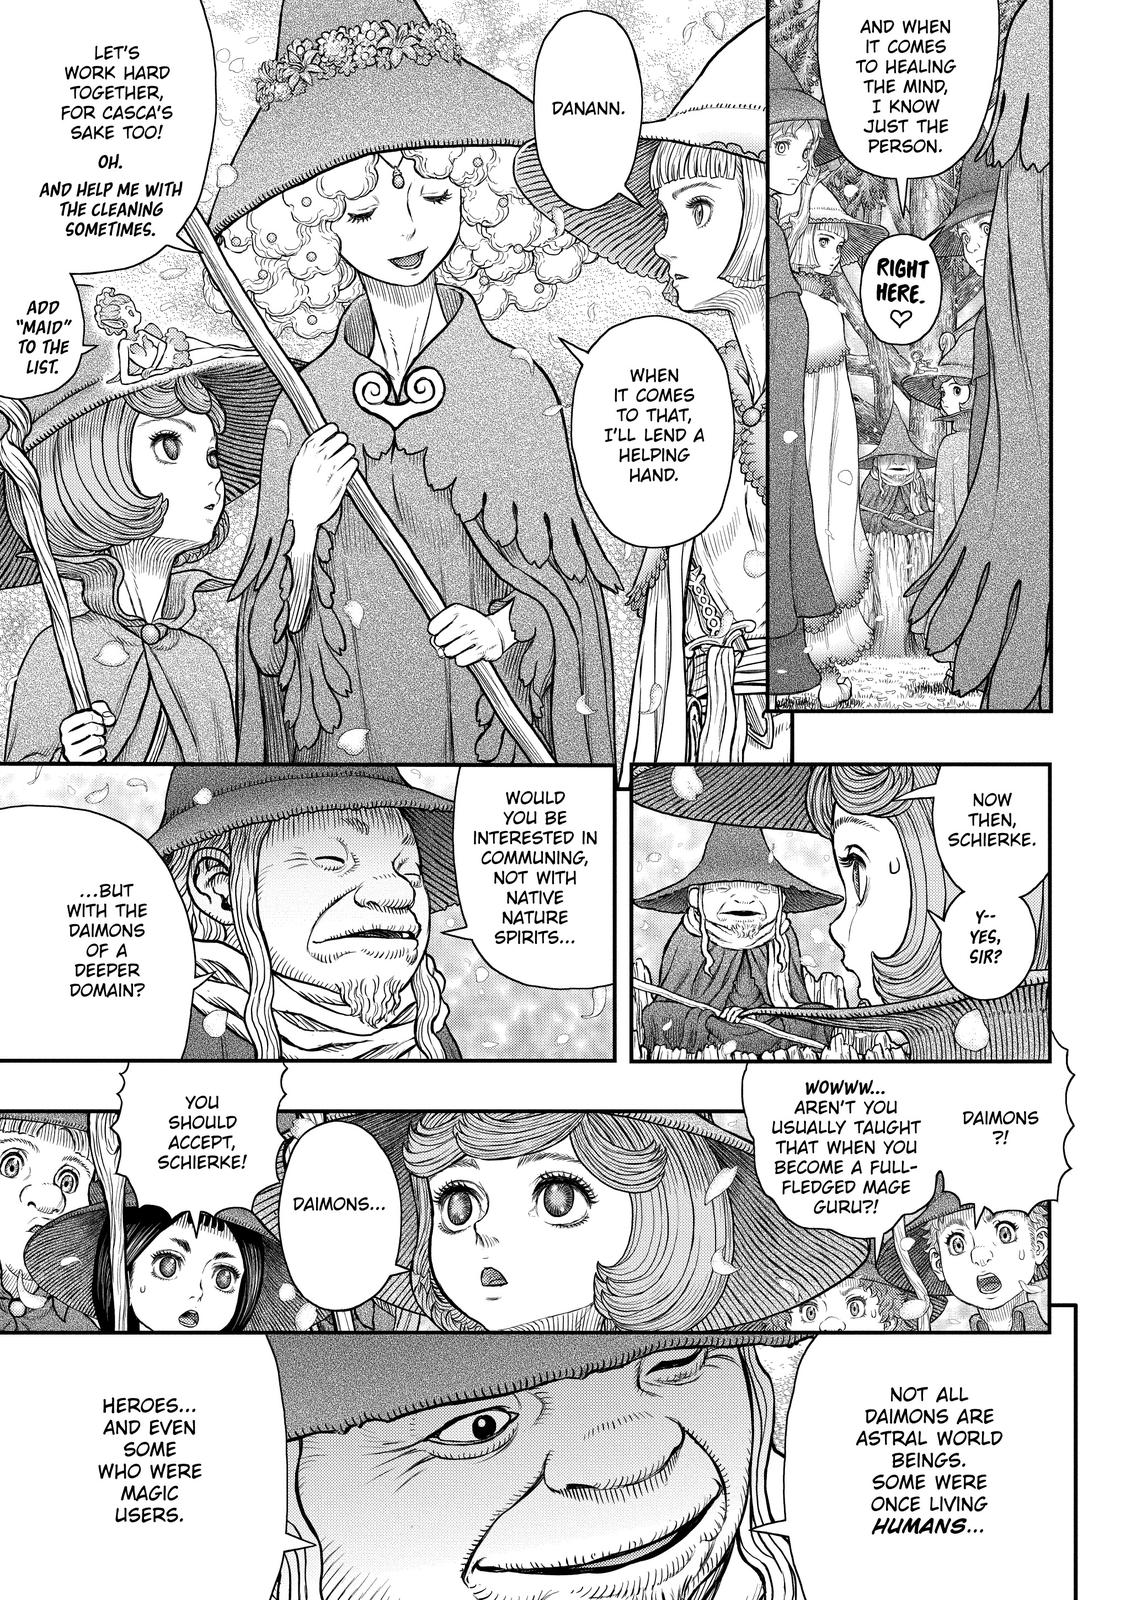 Berserk Manga Chapter 360 image 15